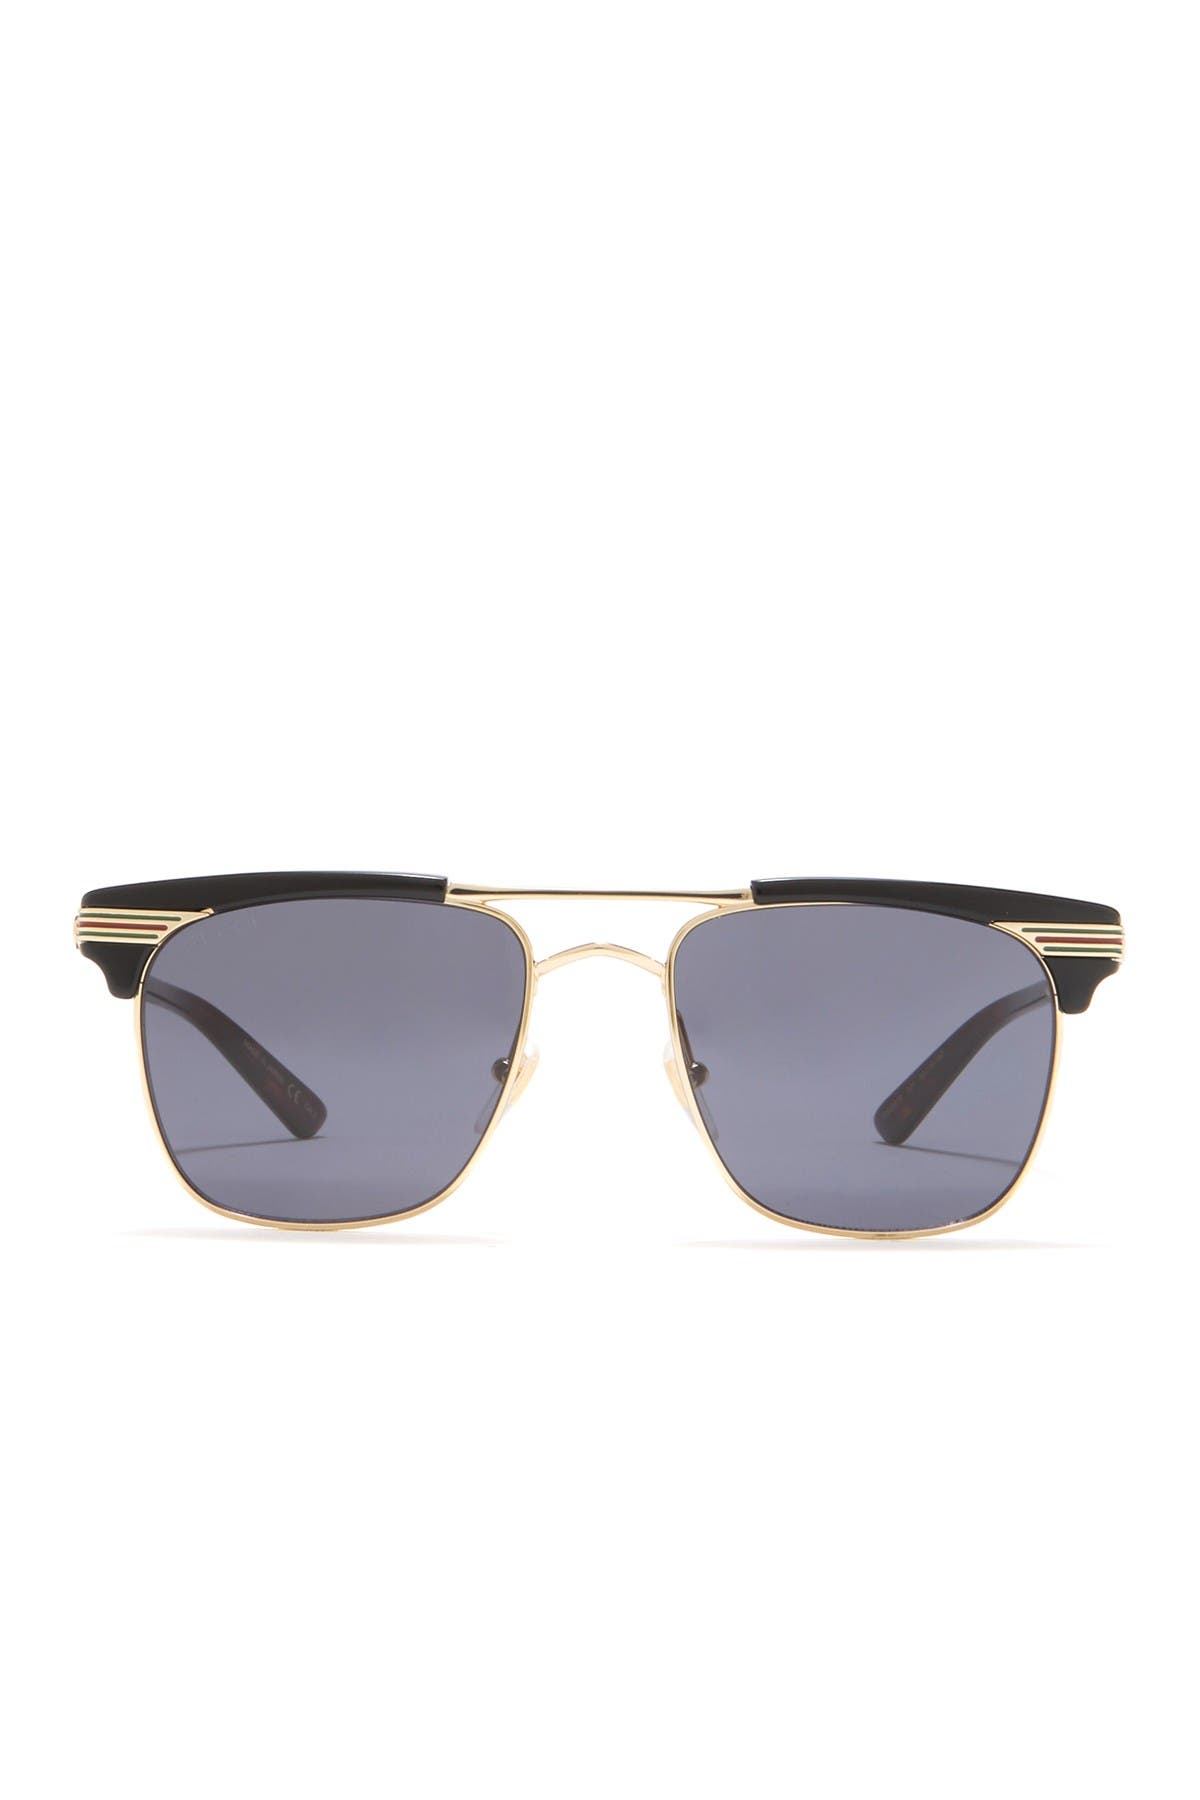 GUCCI | 52mm Clubmaster Sunglasses 